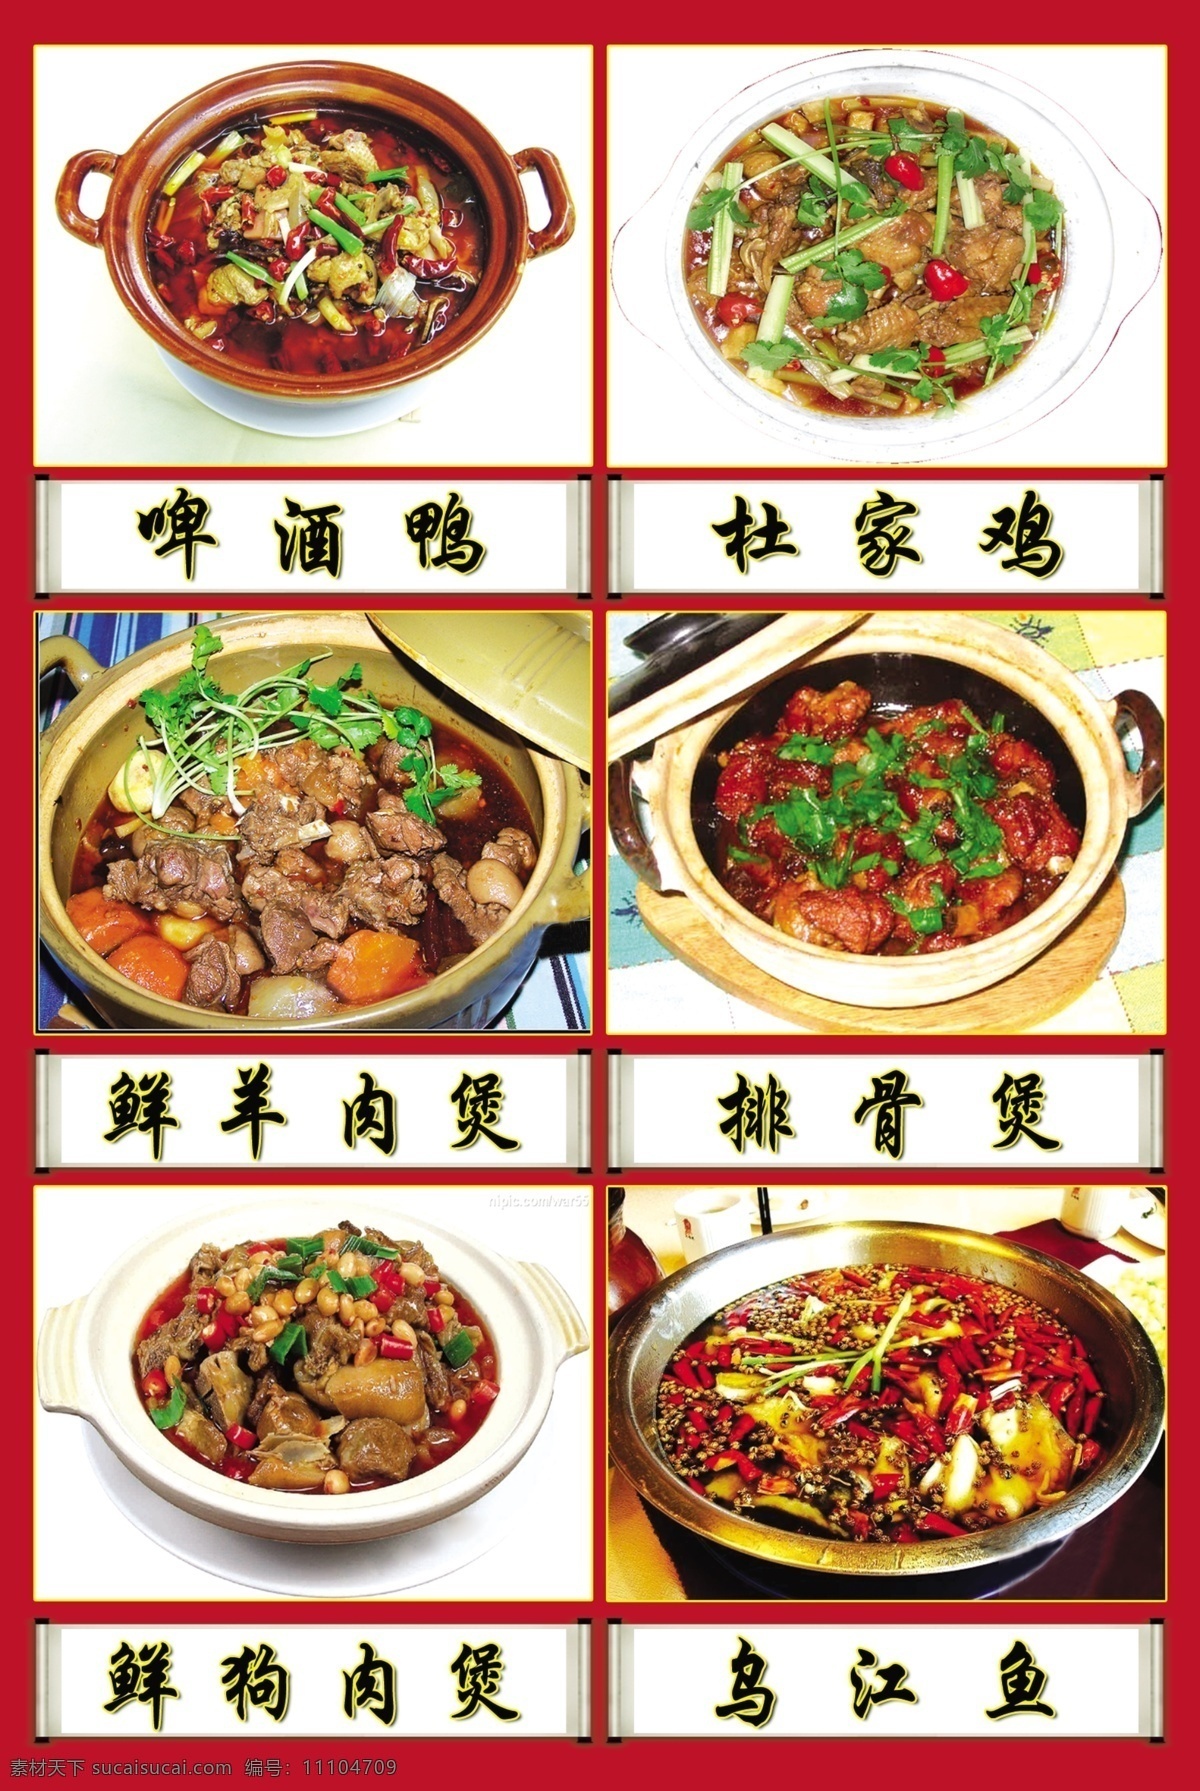 中华 美食 煲 菜 类 菜单 模板 菜单设计模板 菜肴 美味 中华美食 psd源文件